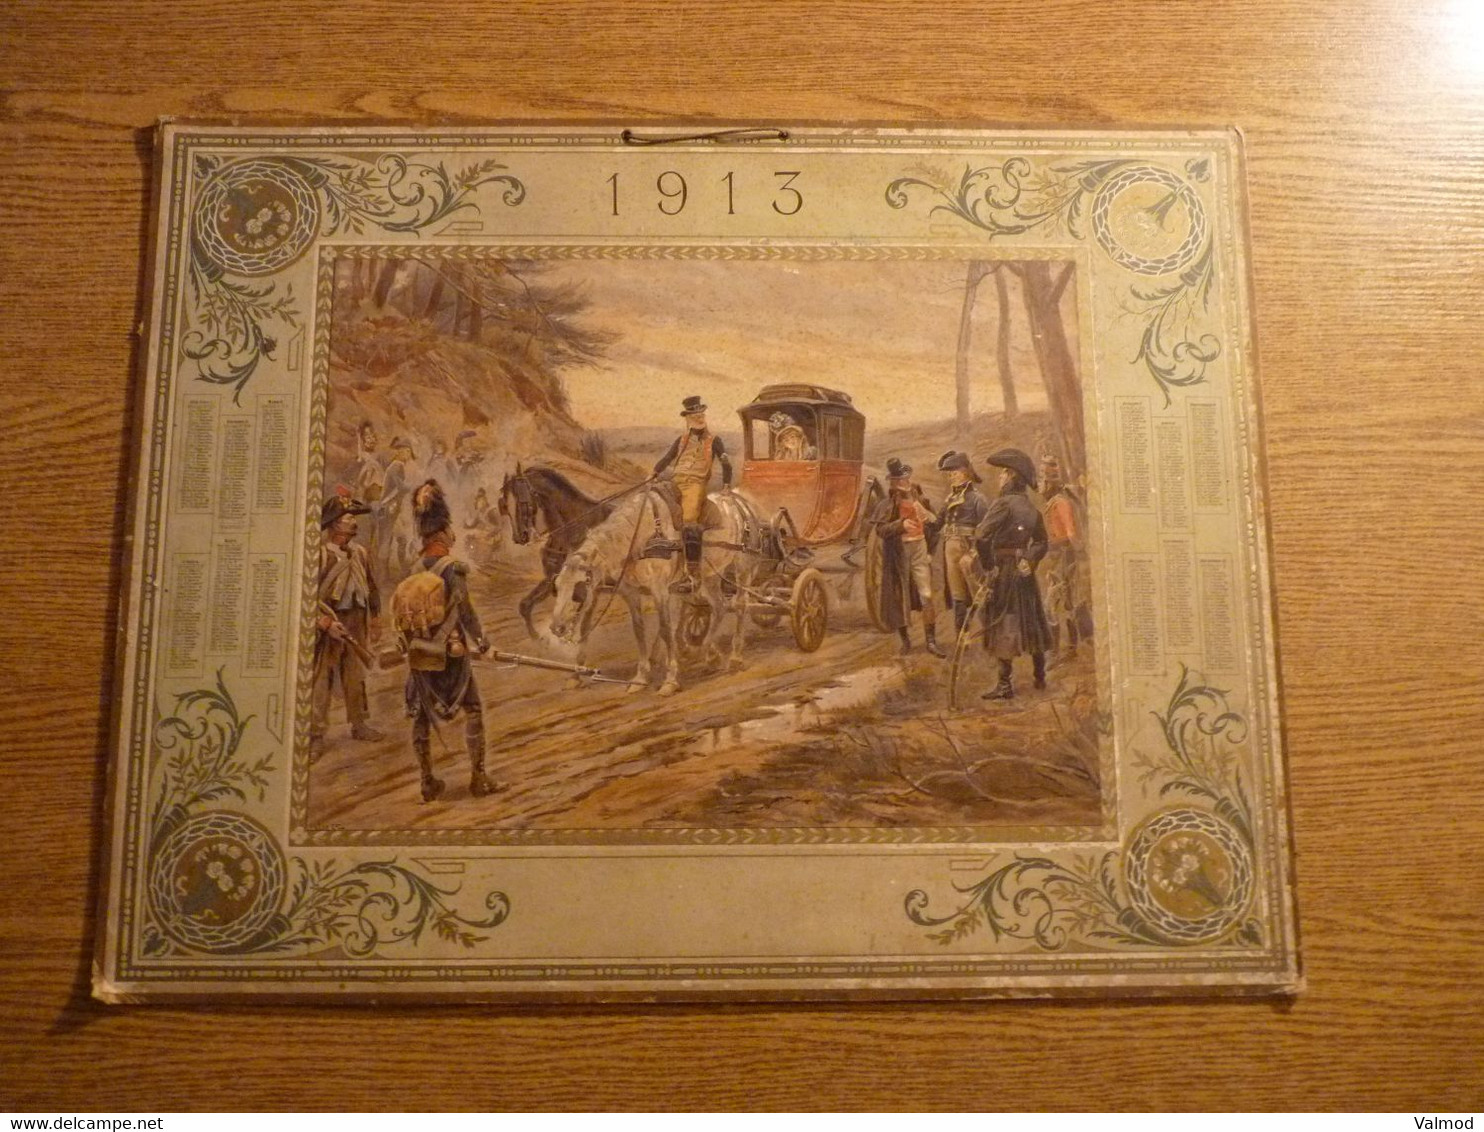 Calendrier grand format 1913 - Calèche arrêtée par les Forces de l'Ordre ?? - Format 59 cm x 46 cm.